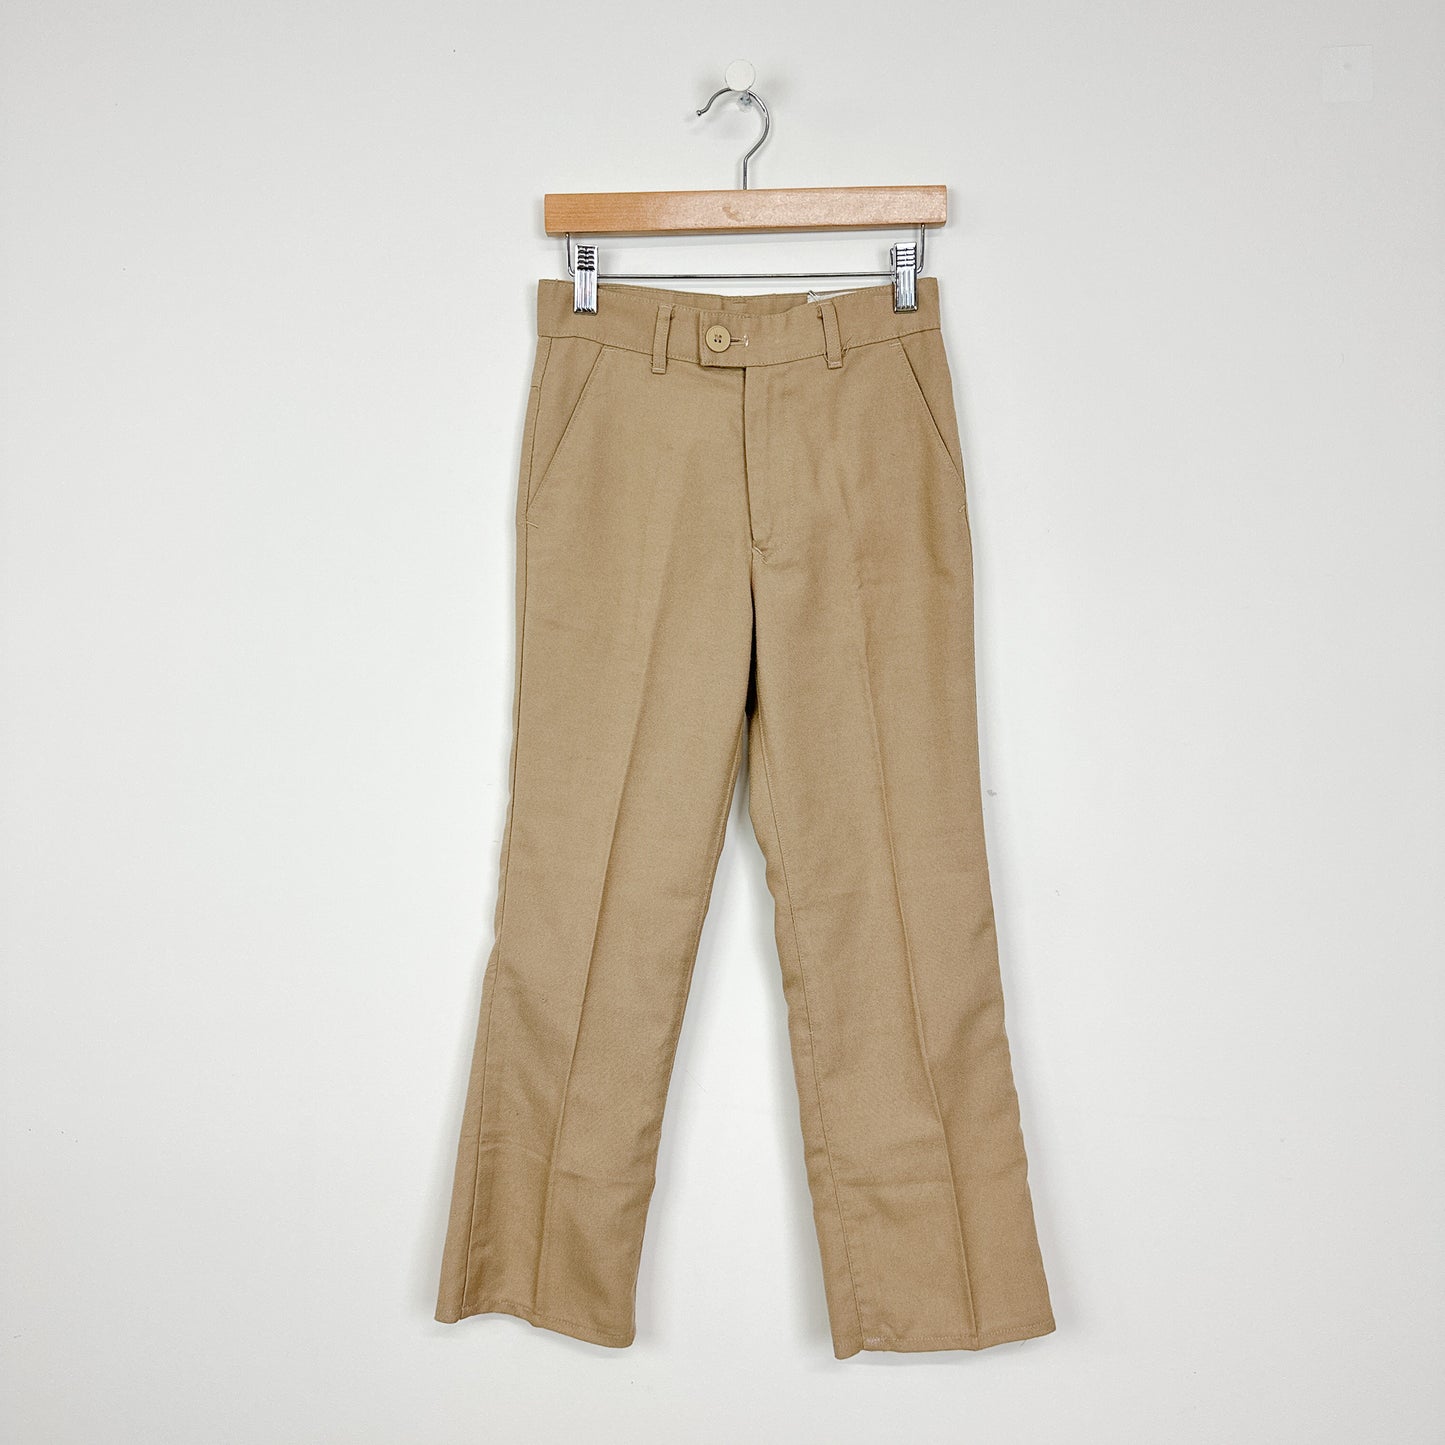 70's Kids Khaki Bootcut Pants - Size 12